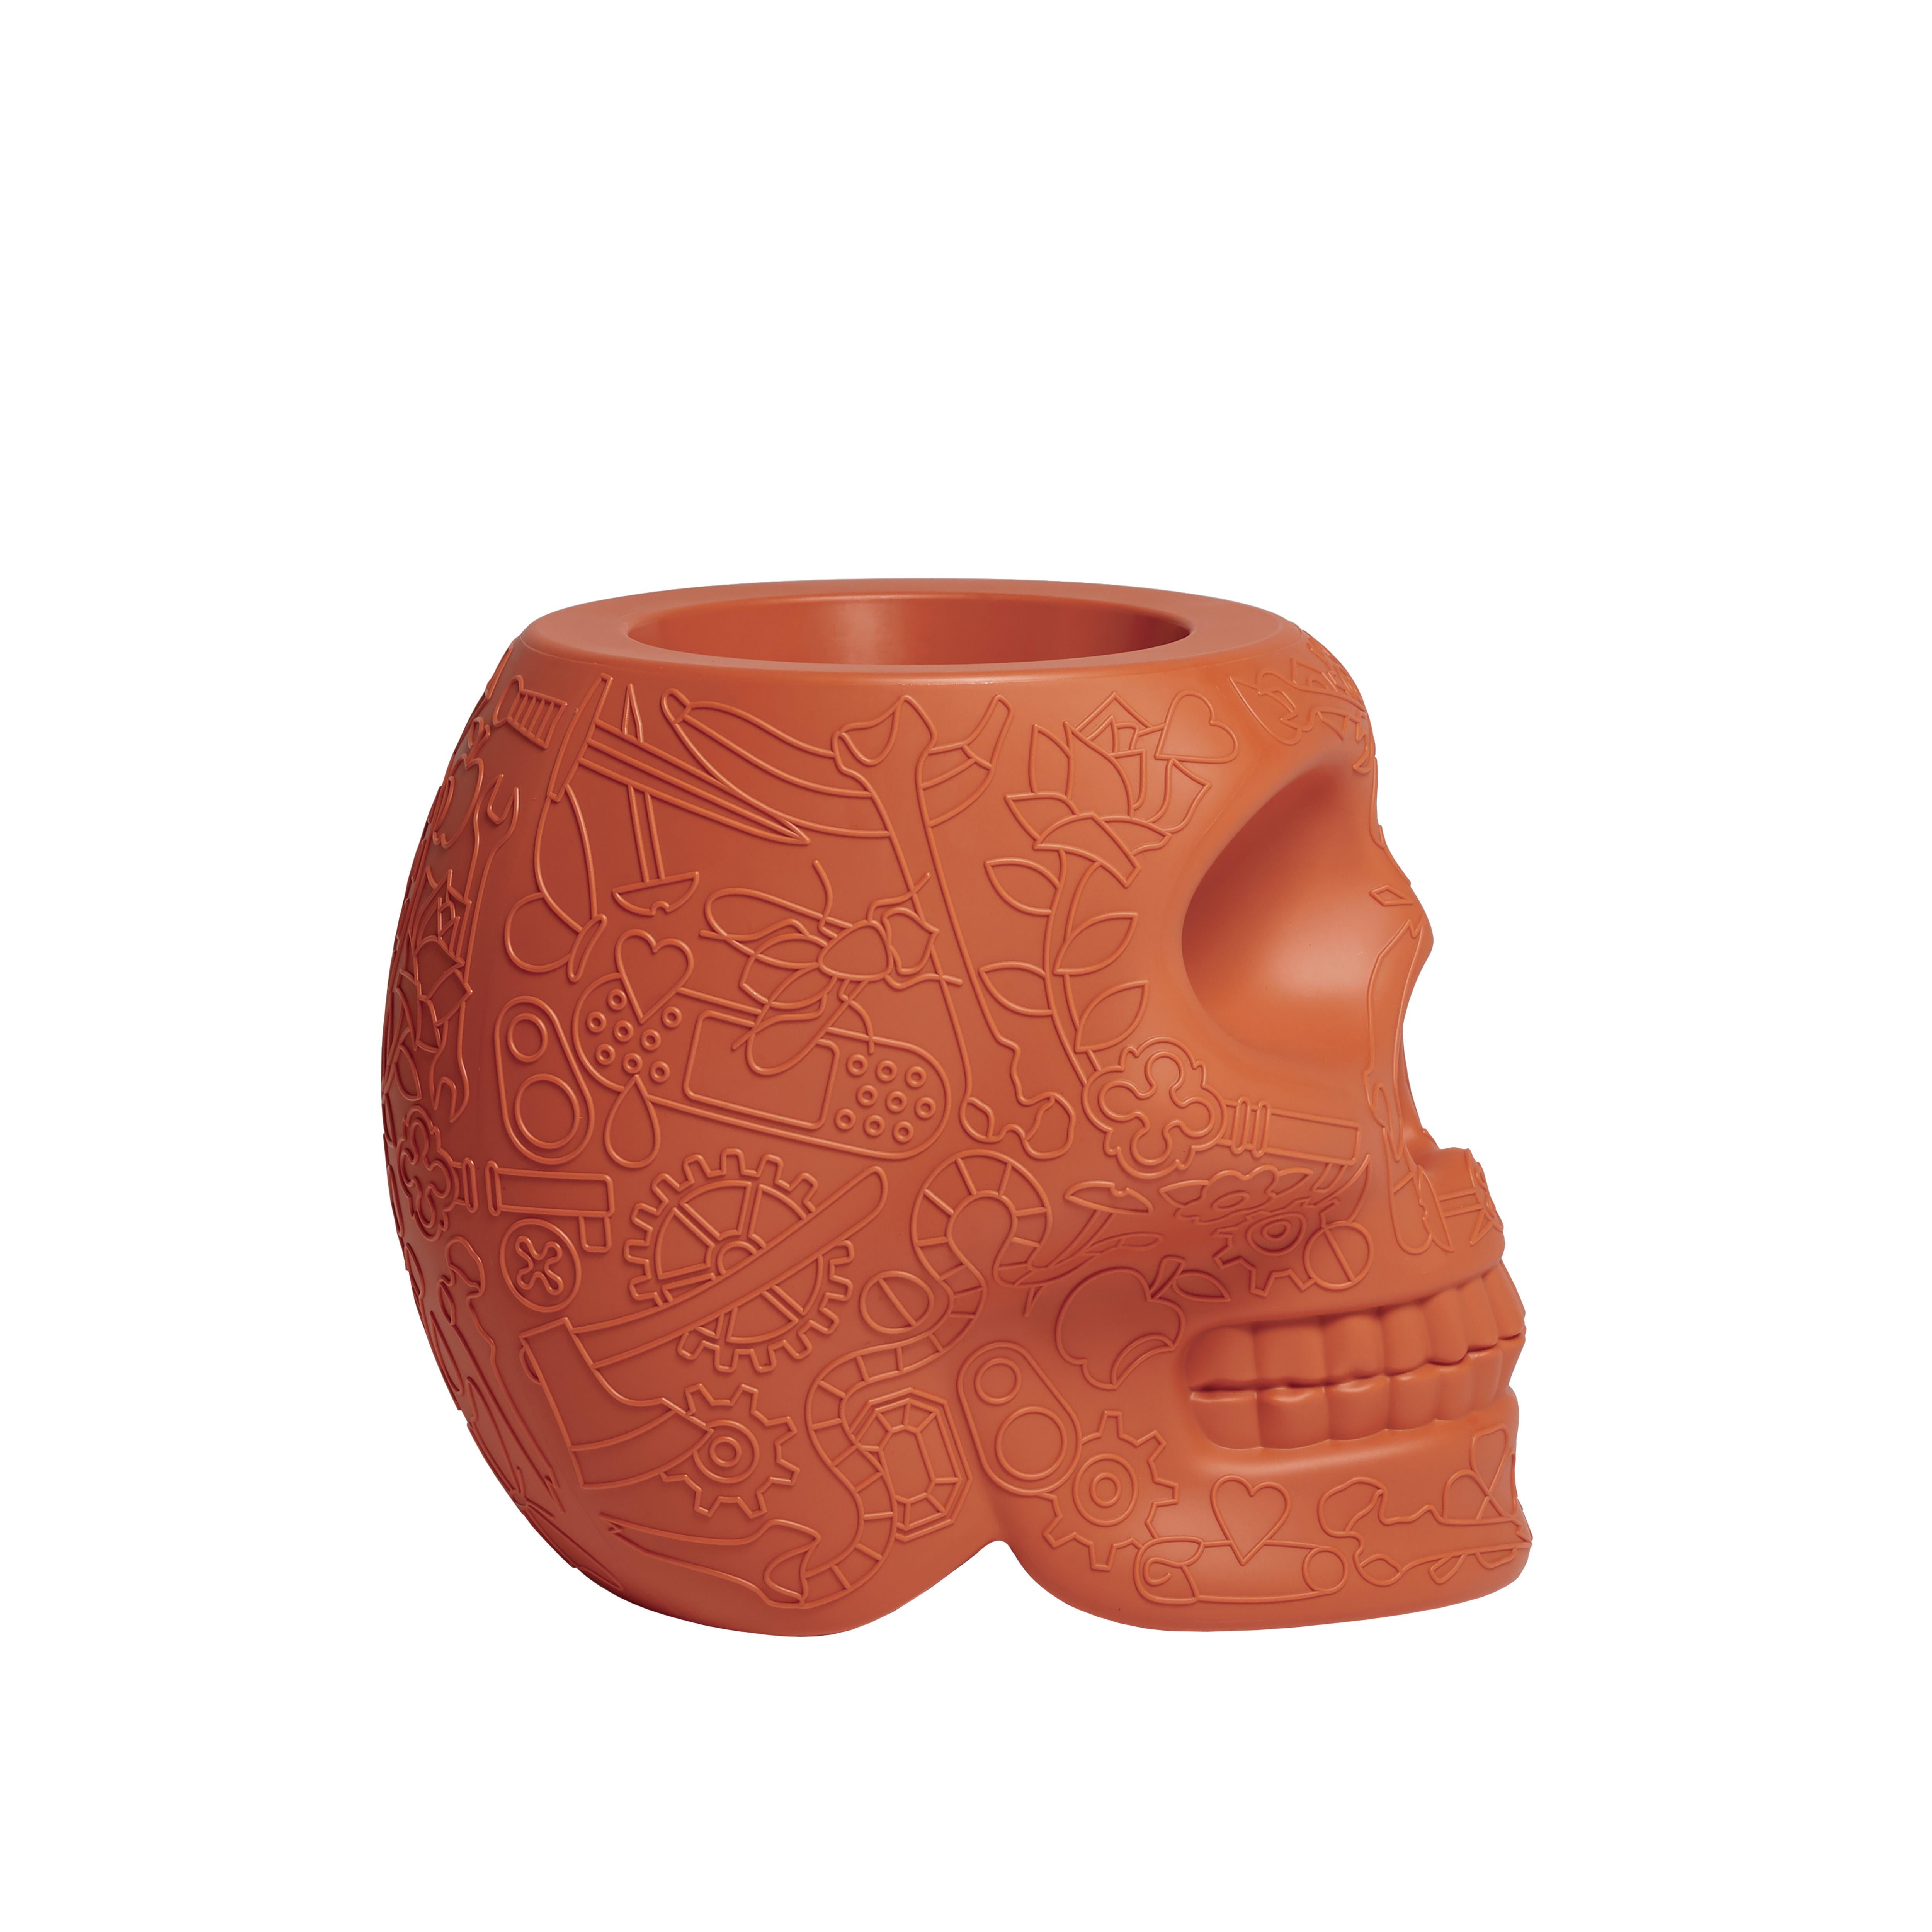 For Sale: Orange (Terracotta) Modern Skull Terracotta Plastic Planter or Champagne Cooler by Studio Job 3